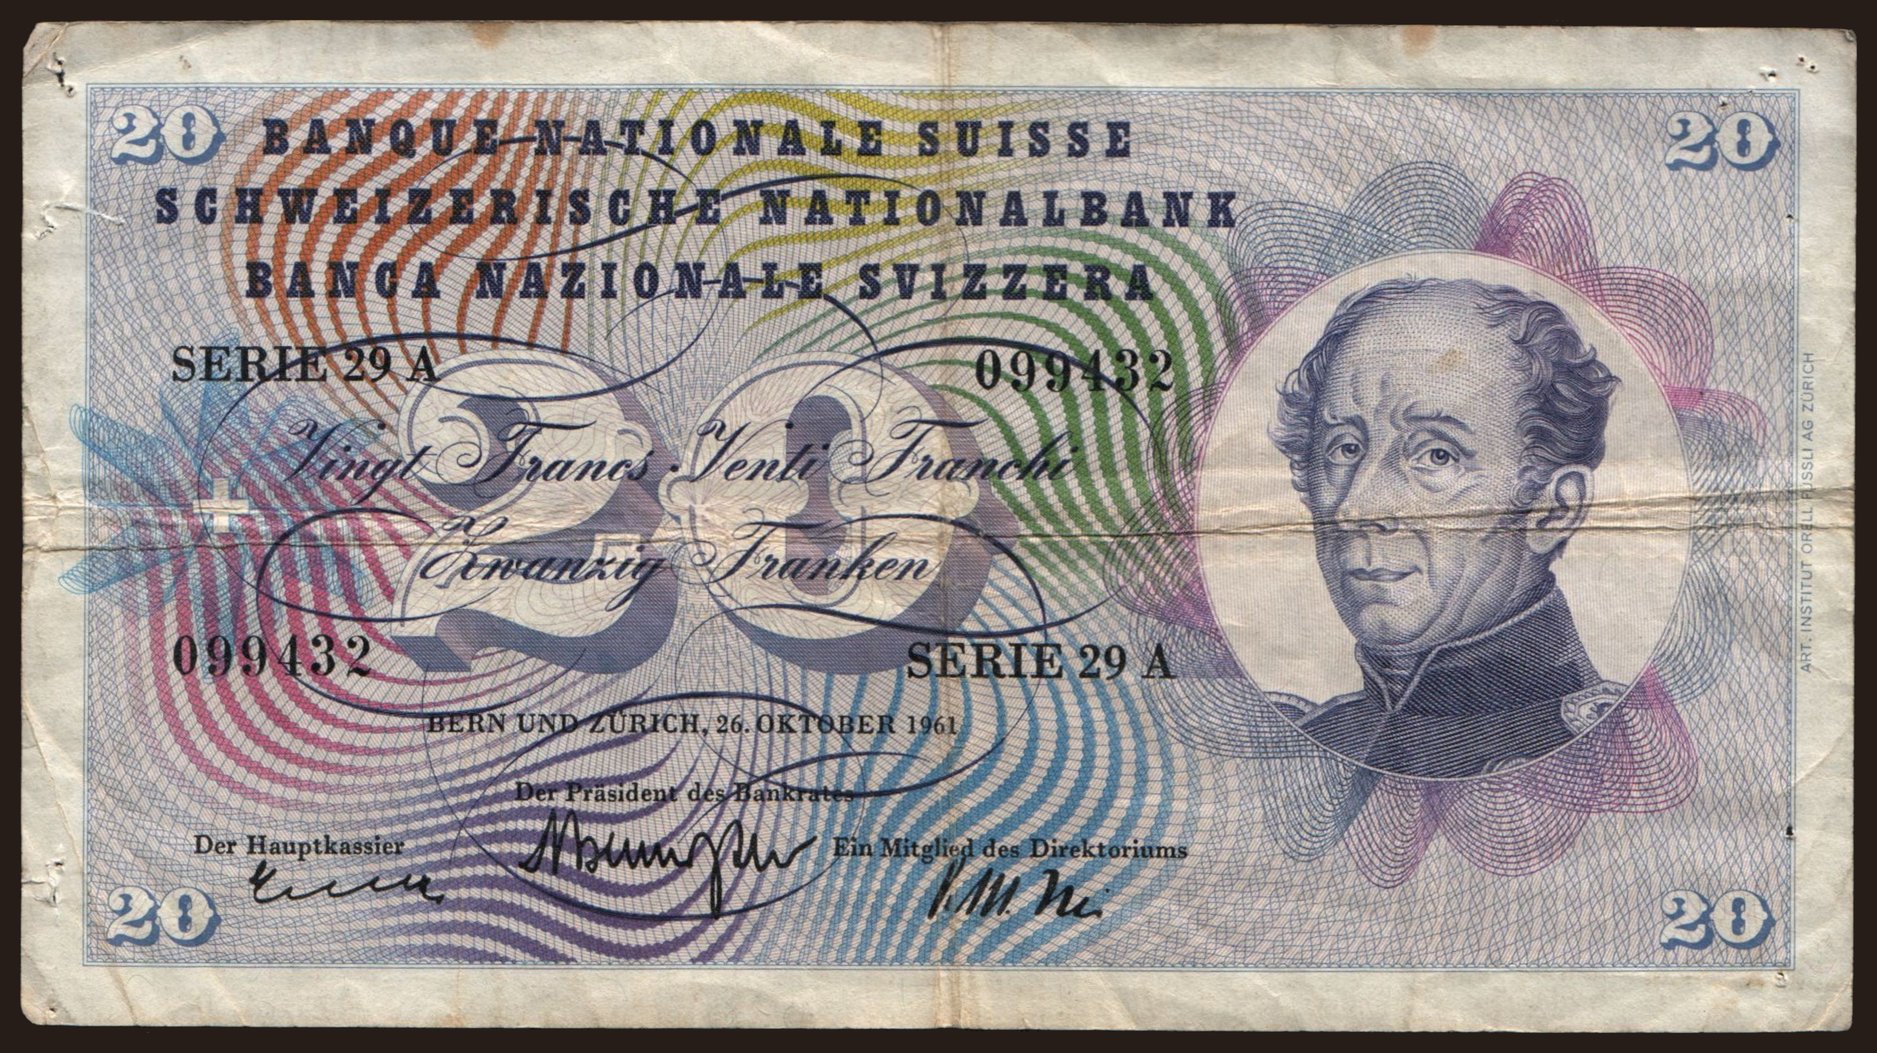 20 francs, 1961